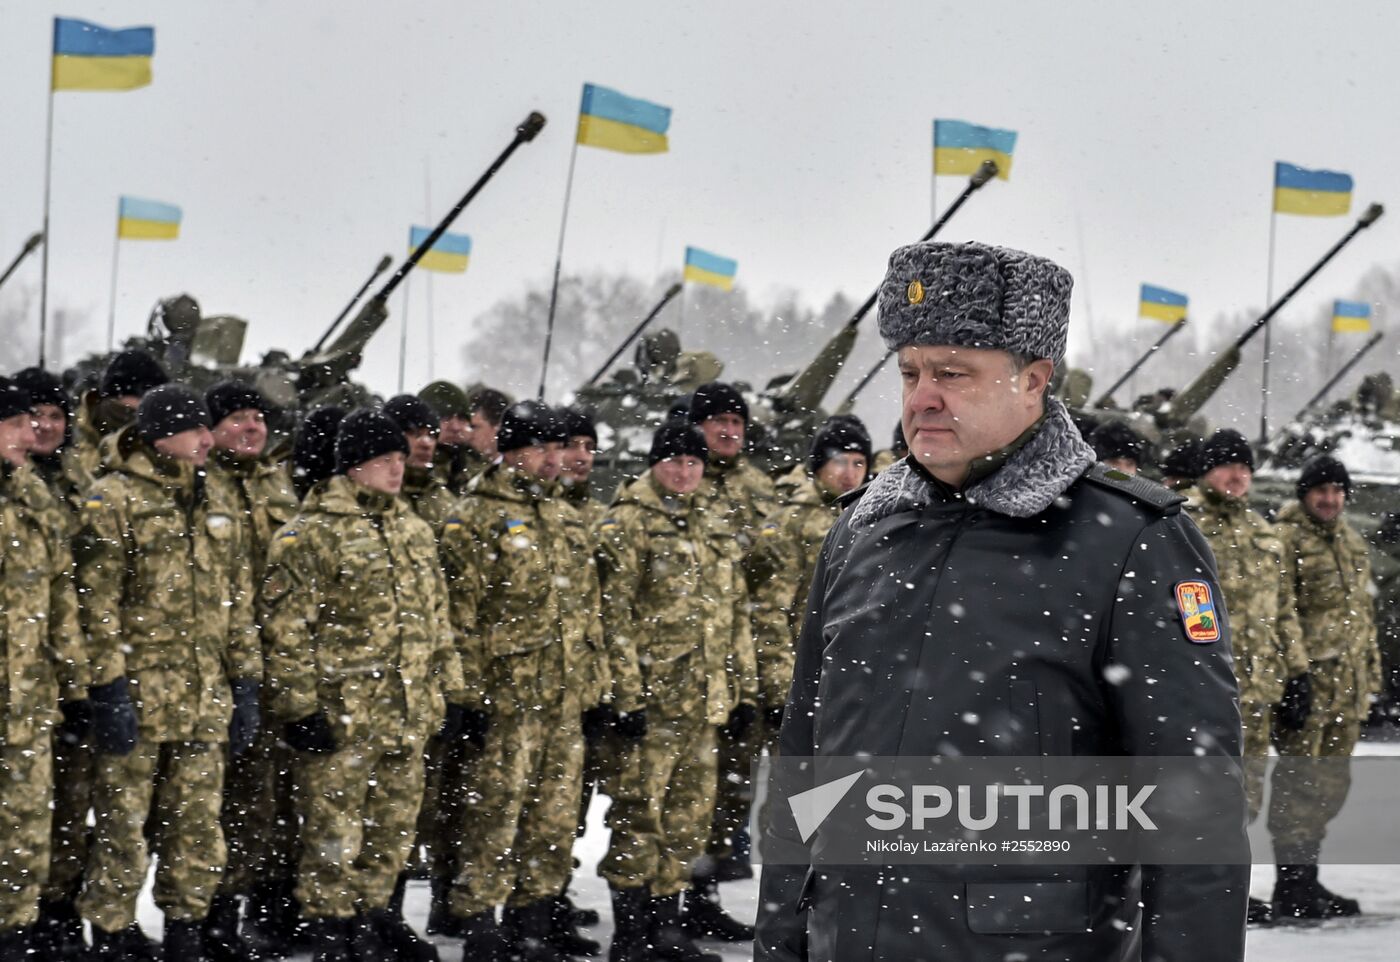 Ukrainian president Petro Poroshenko visits Zhitomir Region